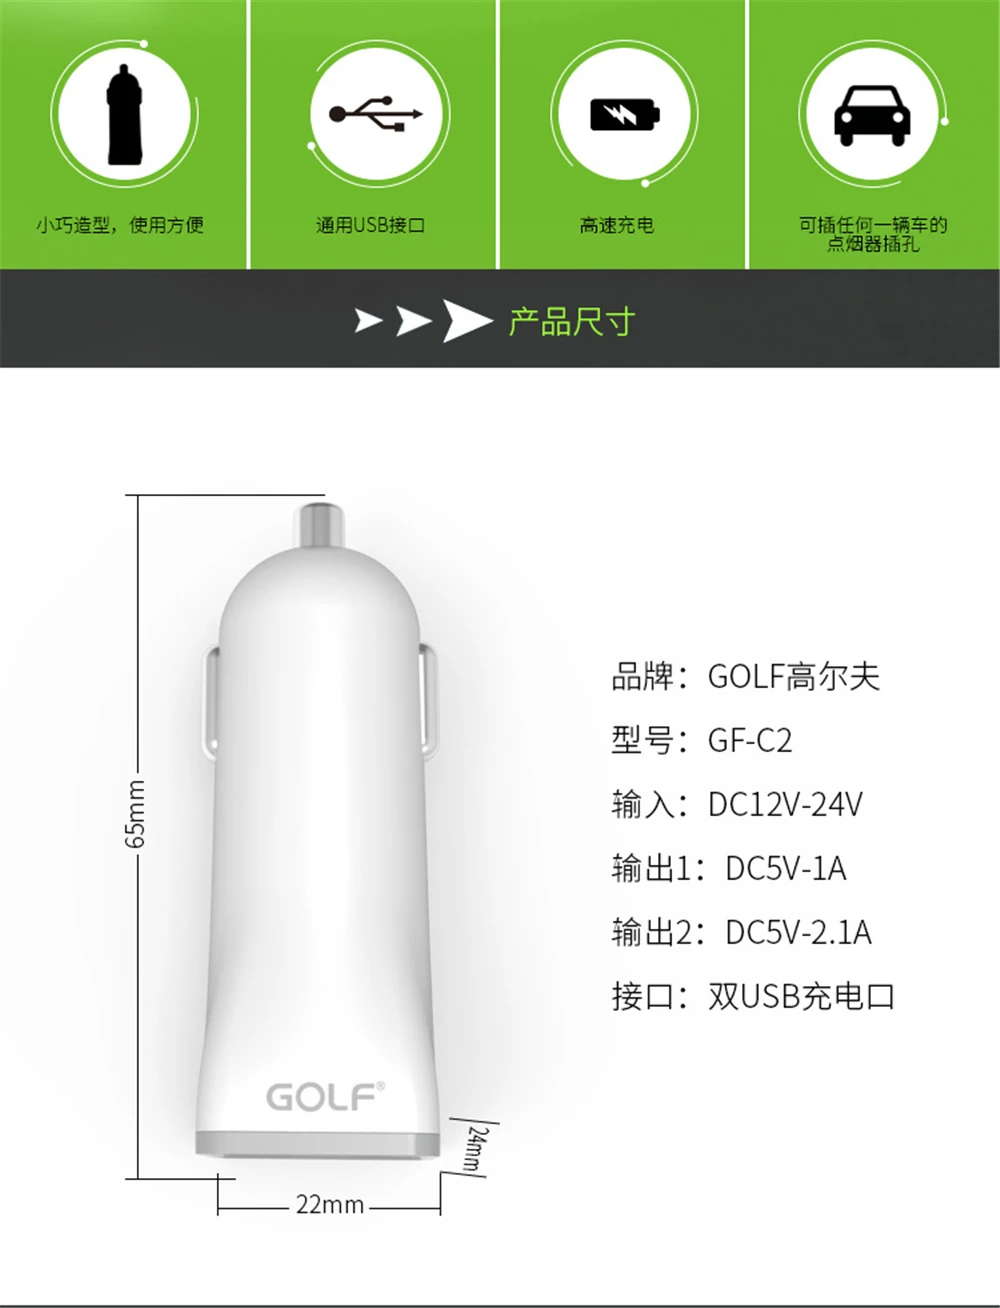 Golf 5 V 2.1A двойной выход двойной зарядное устройство USB для iPhone samsung LG Android телефон Универсальный Авто крепление электроадаптер для зарядки